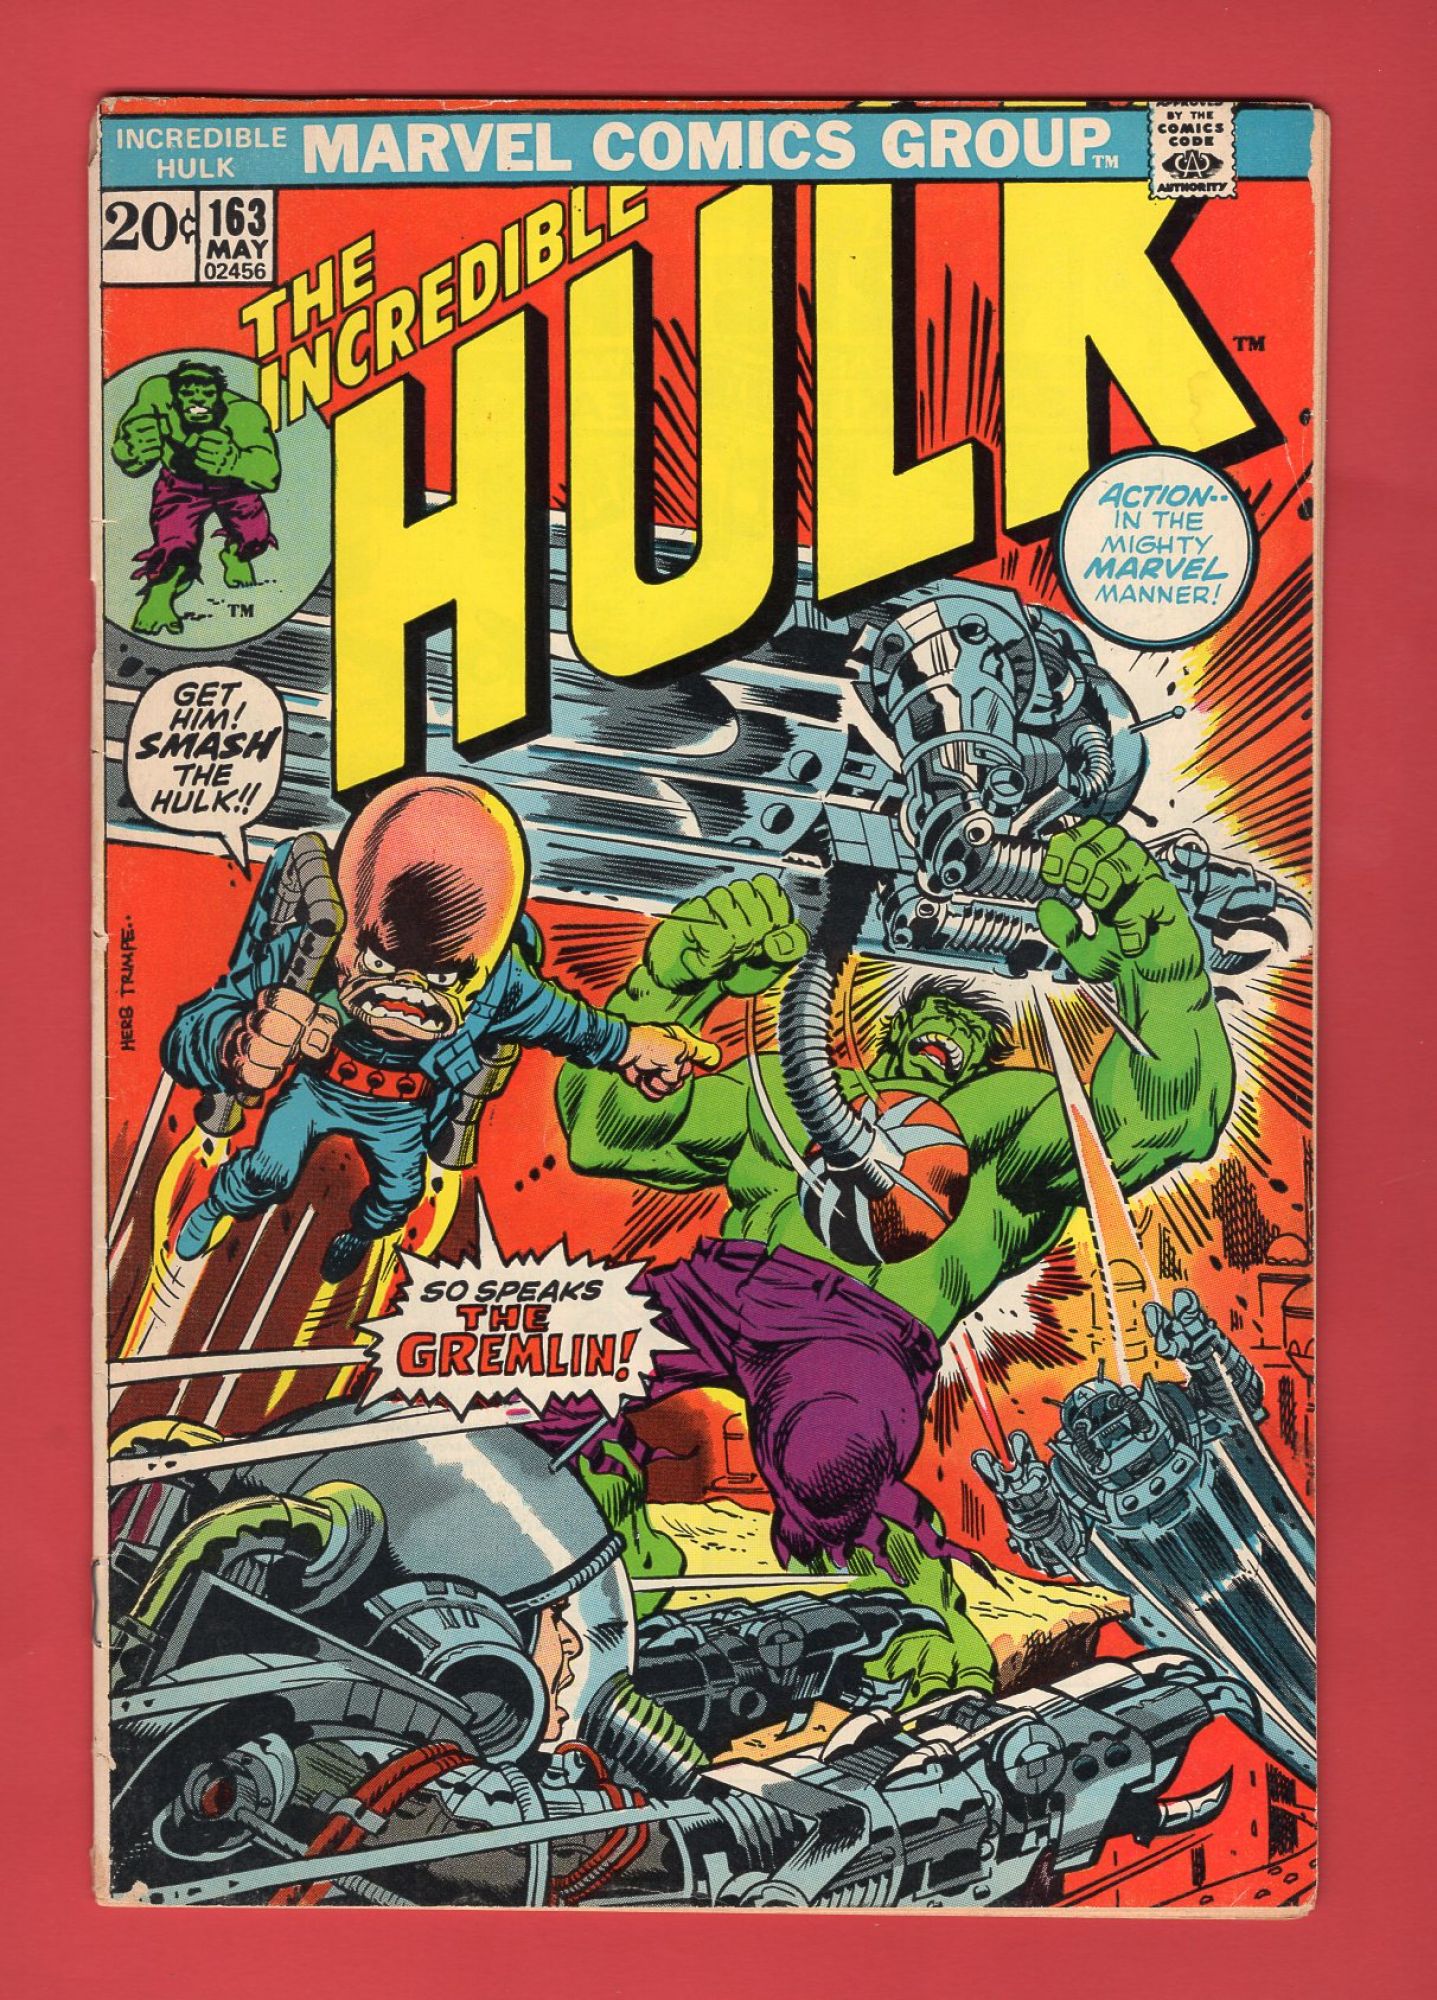 Incredible Hulk #163, May 1973, 4.5 VG+